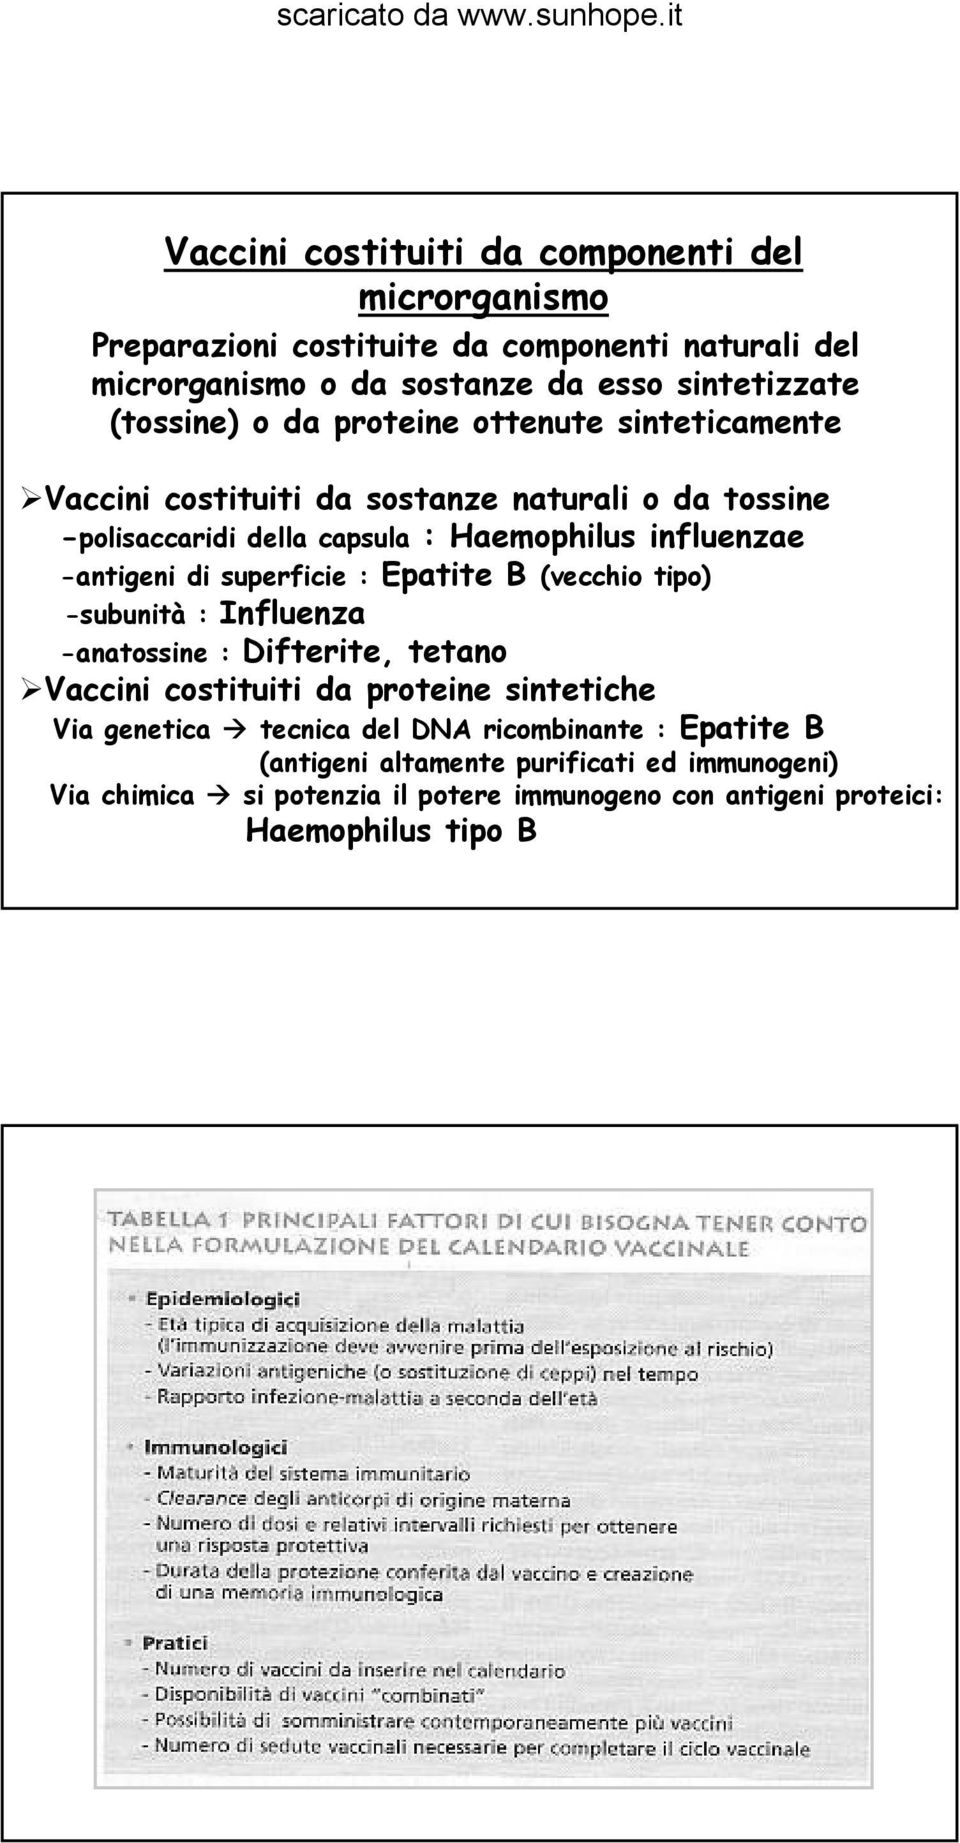 -antigeni di superficie : Epatite B (vecchio tipo) -subunità : Influenza -anatossine : Difterite, tetano Vaccini costituiti da proteine sintetiche Via genetica